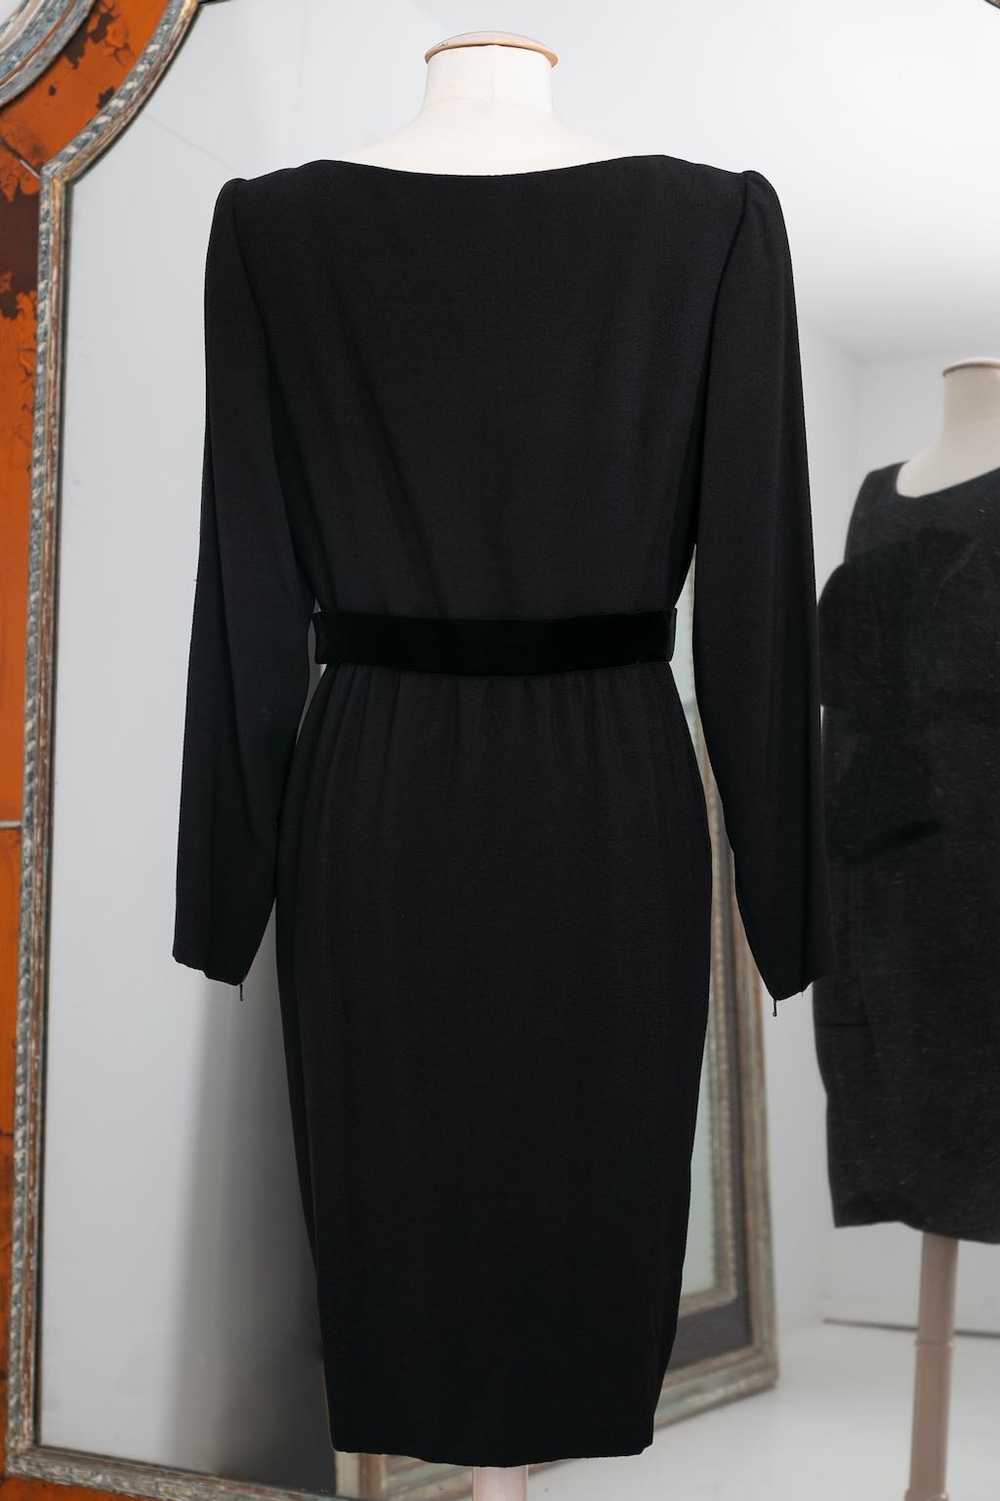 Yves saint Laurent Haute Couture black dress - image 3